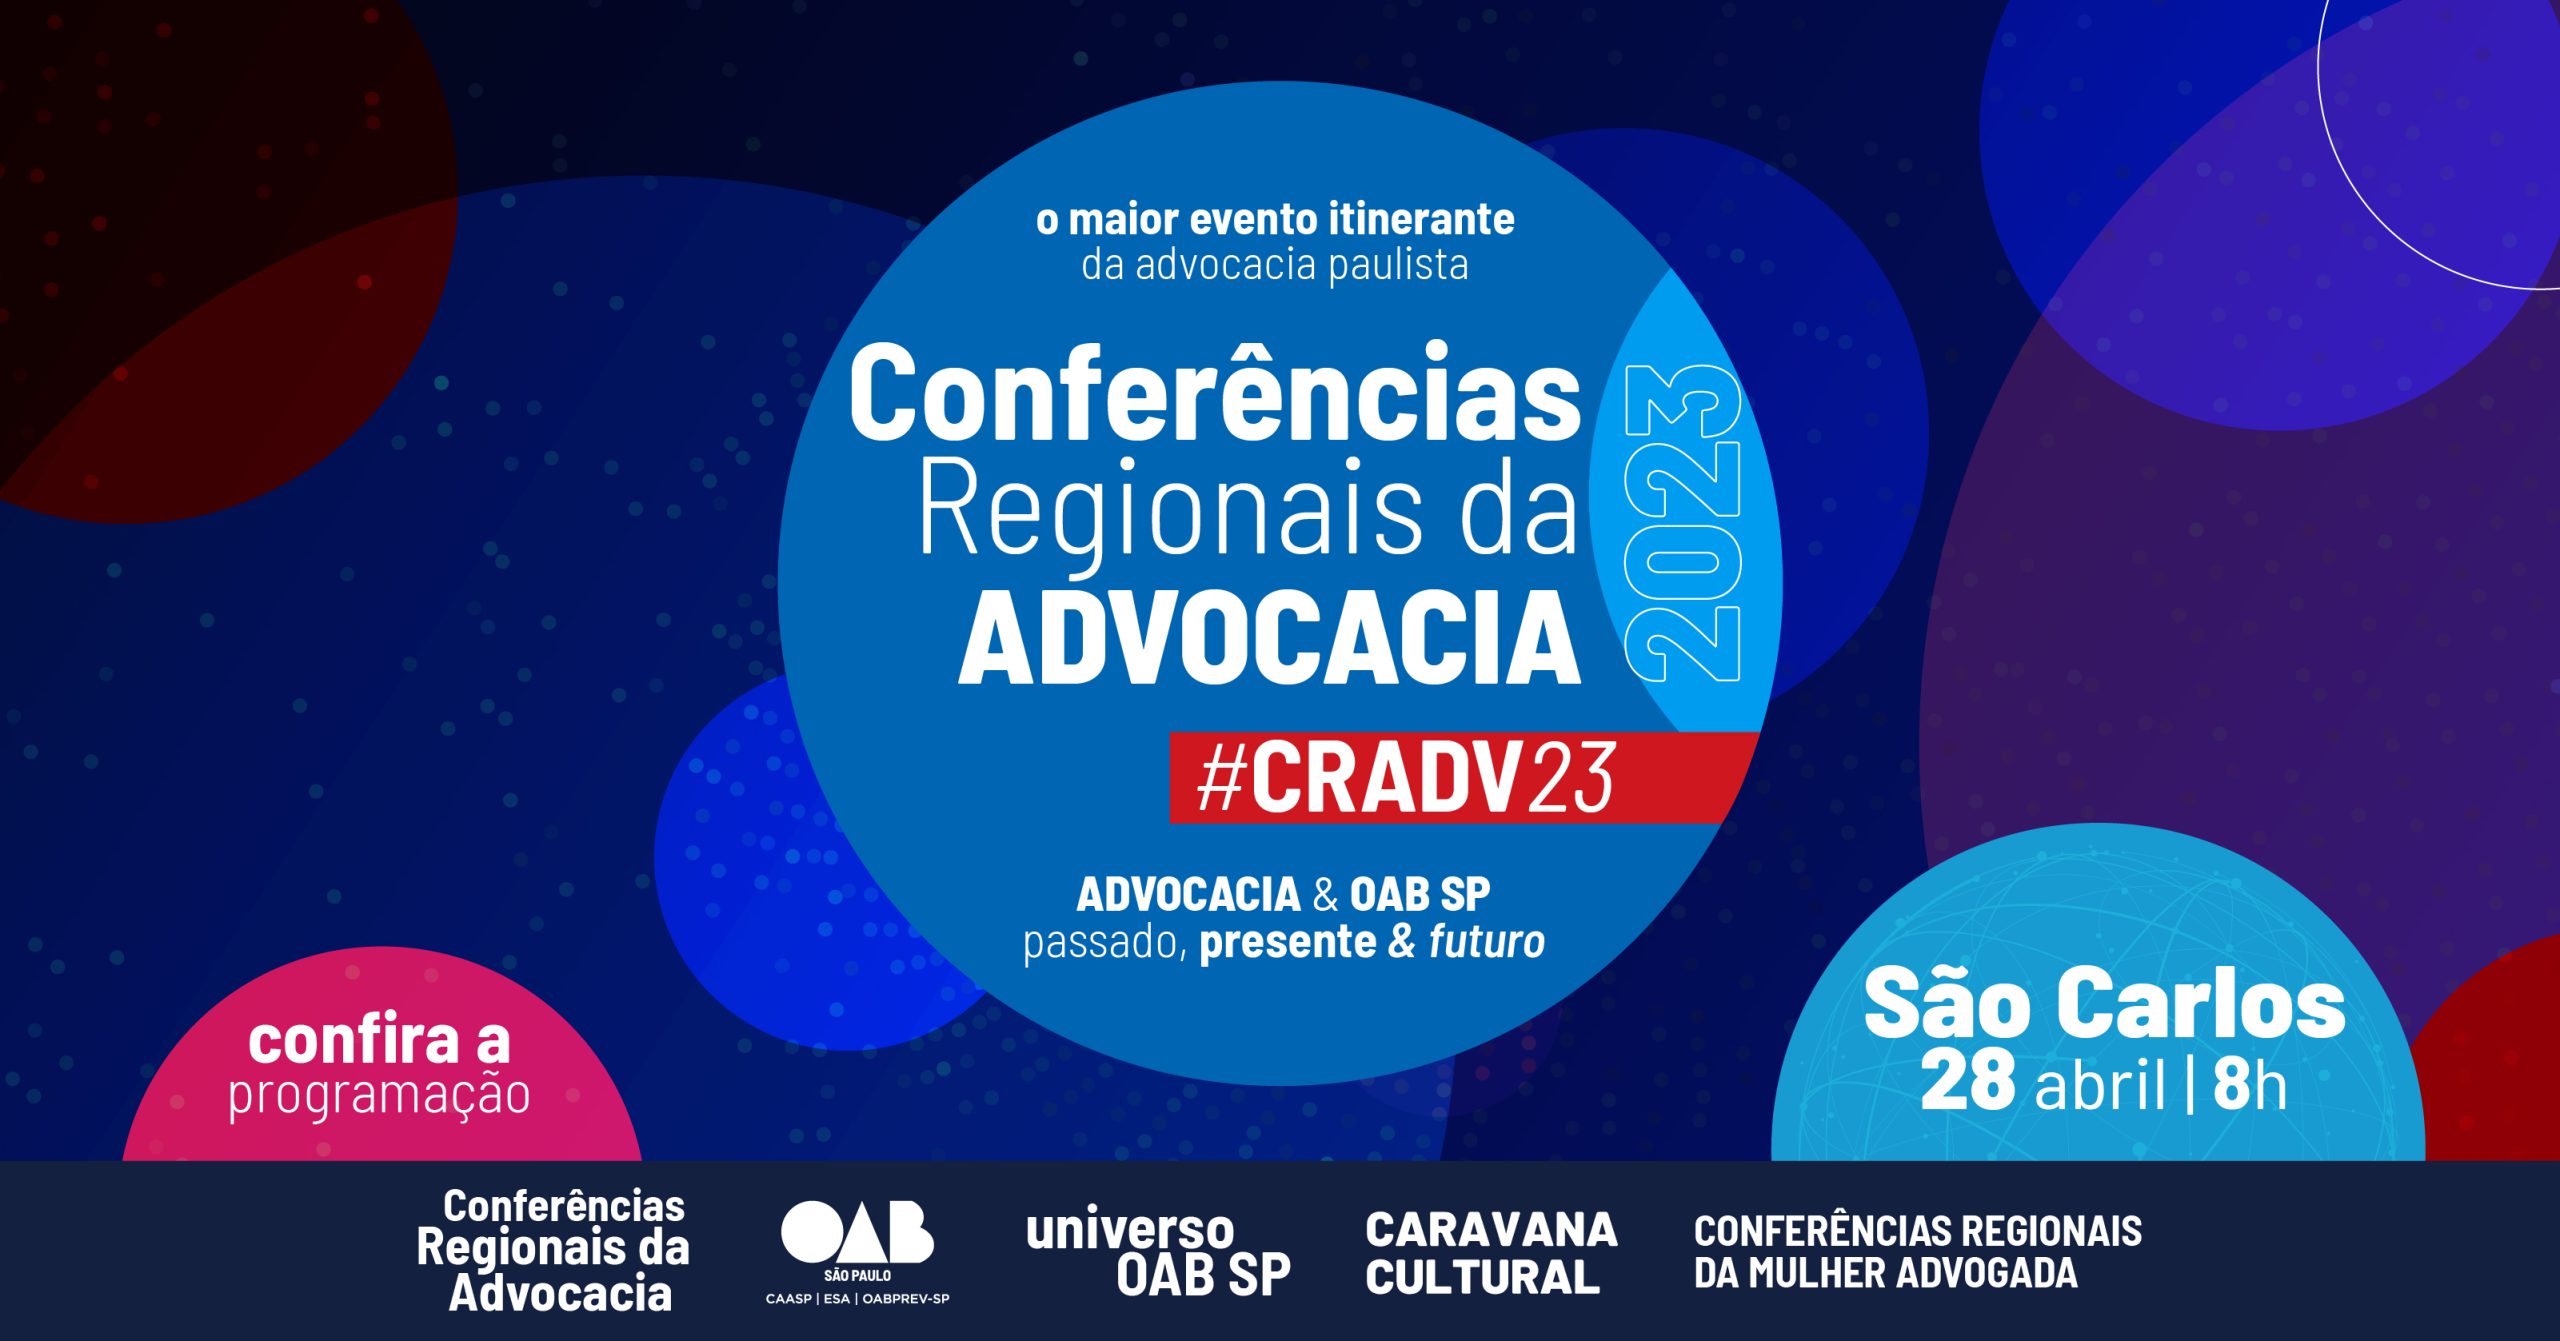 Conferência Regional da Advocacia da OAB SP chega à região de São Carlos no próximo dia 28